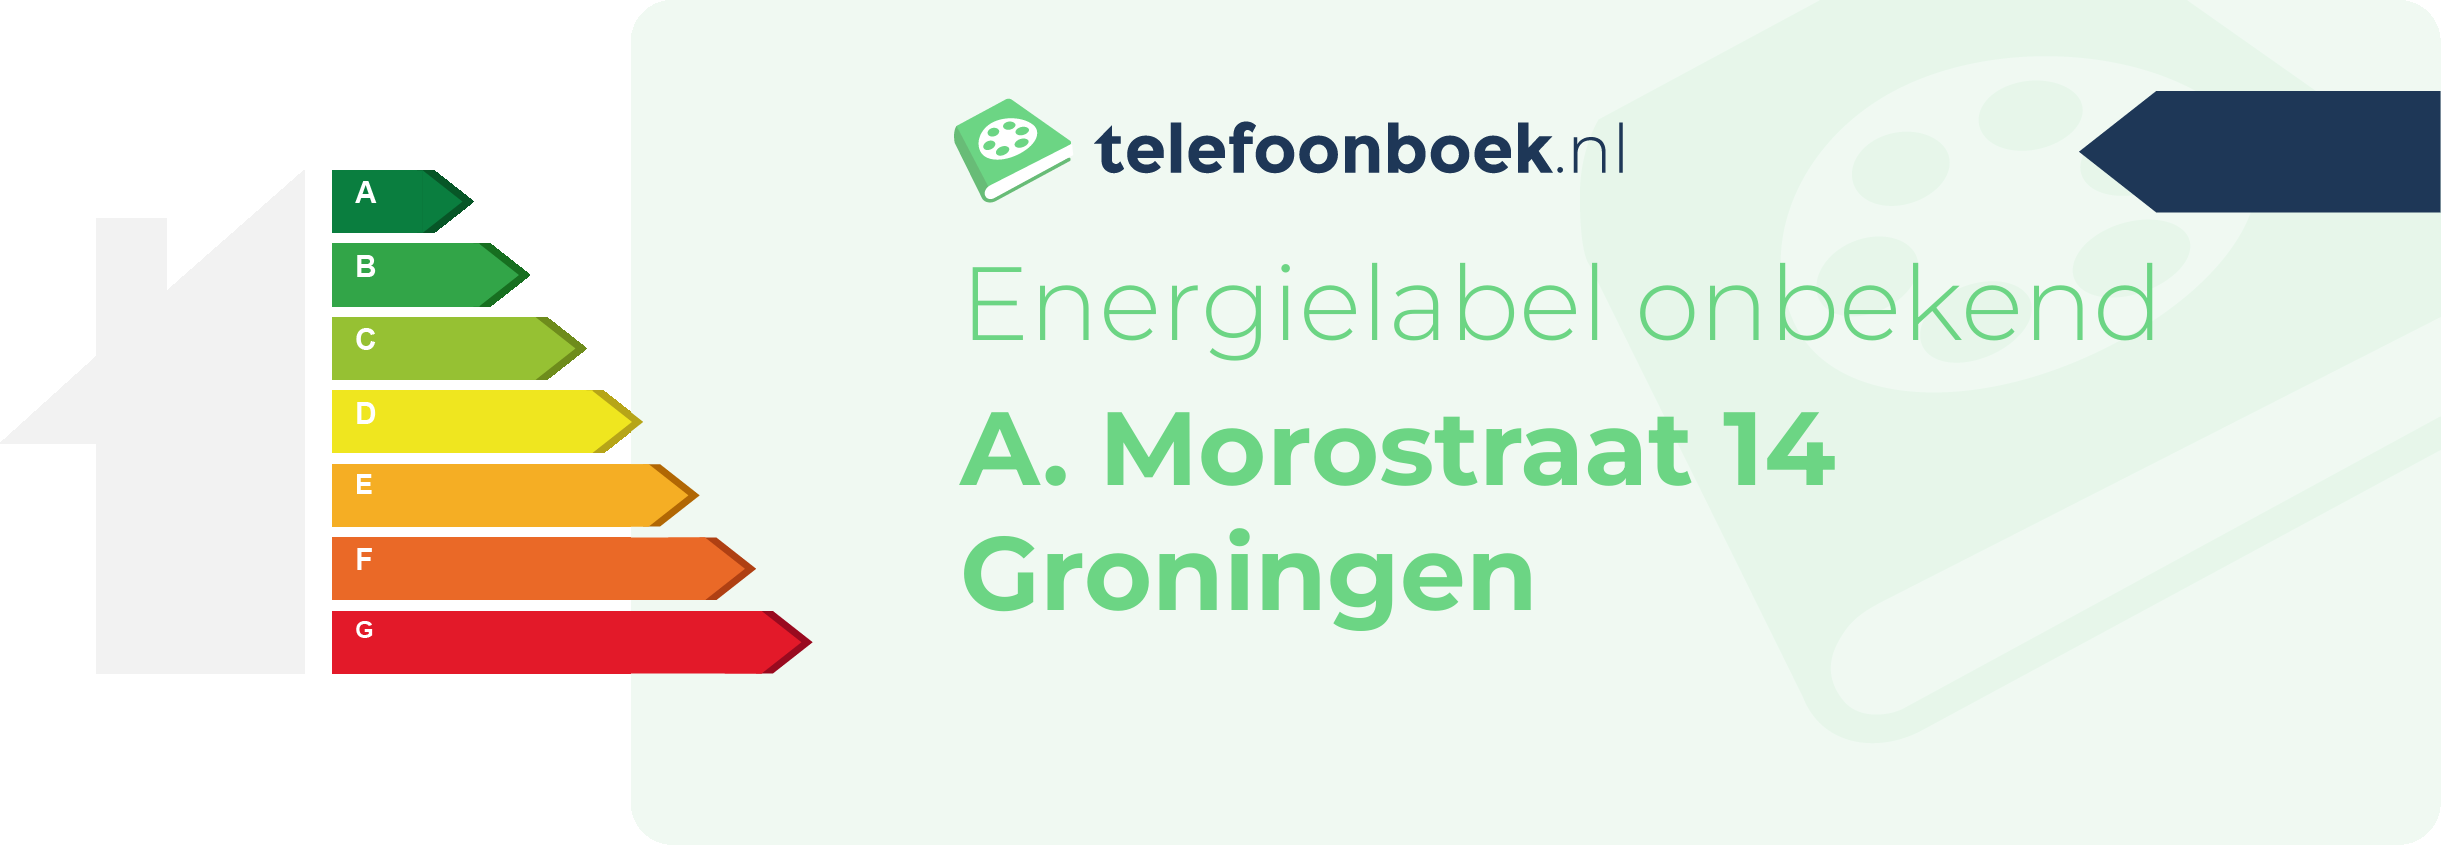 Energielabel A. Morostraat 14 Groningen